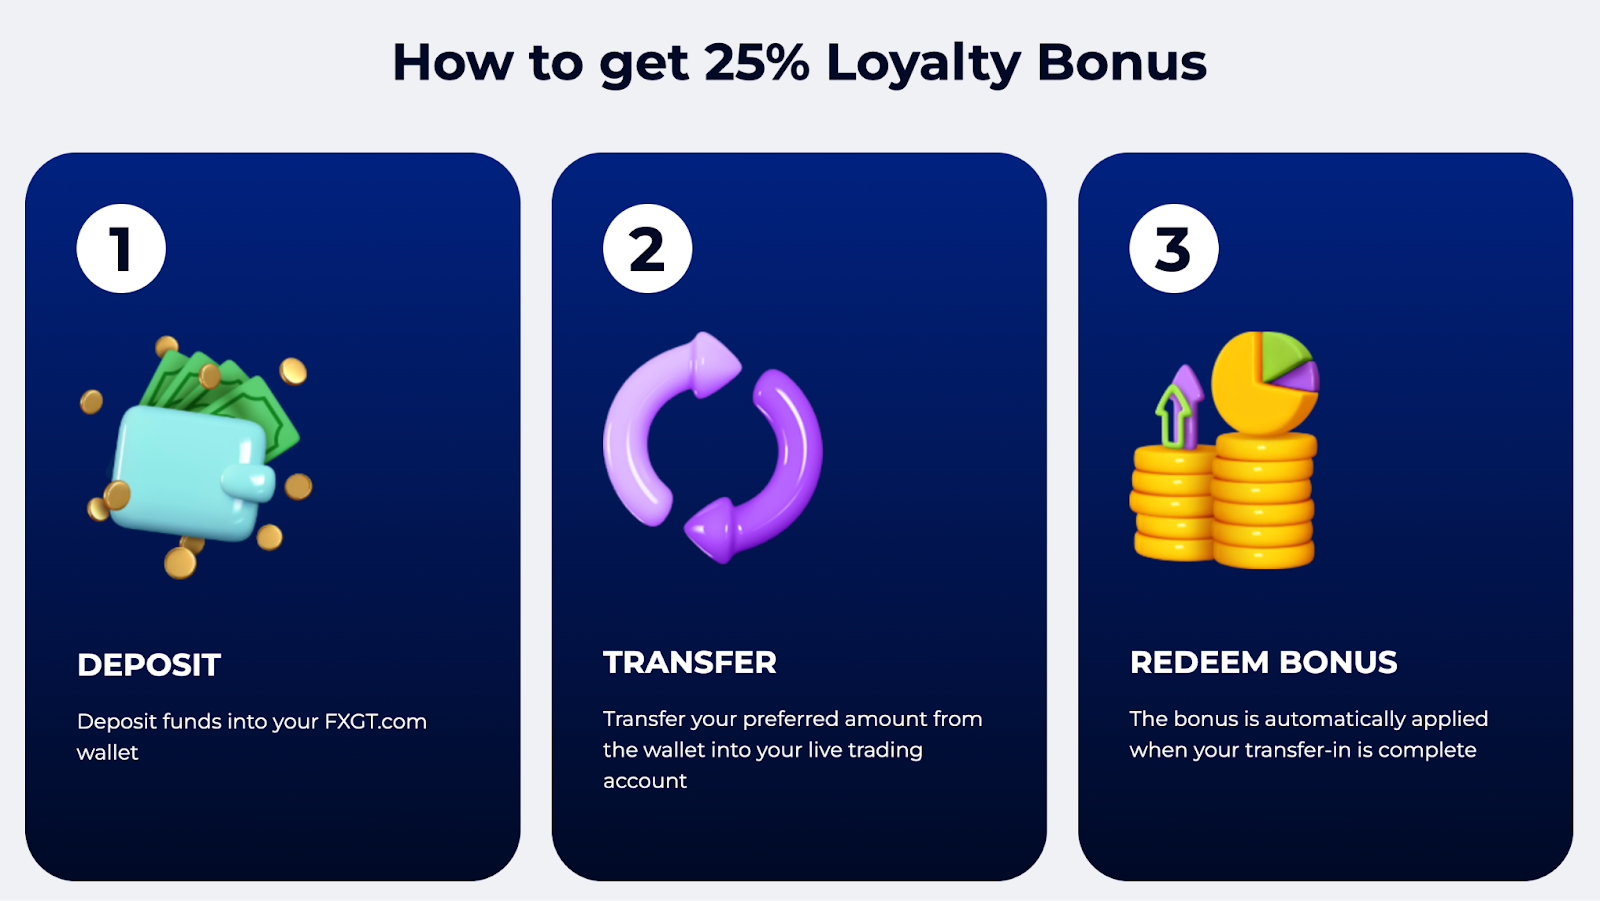 Chương trình Loyalty bonus trên FXGT.com